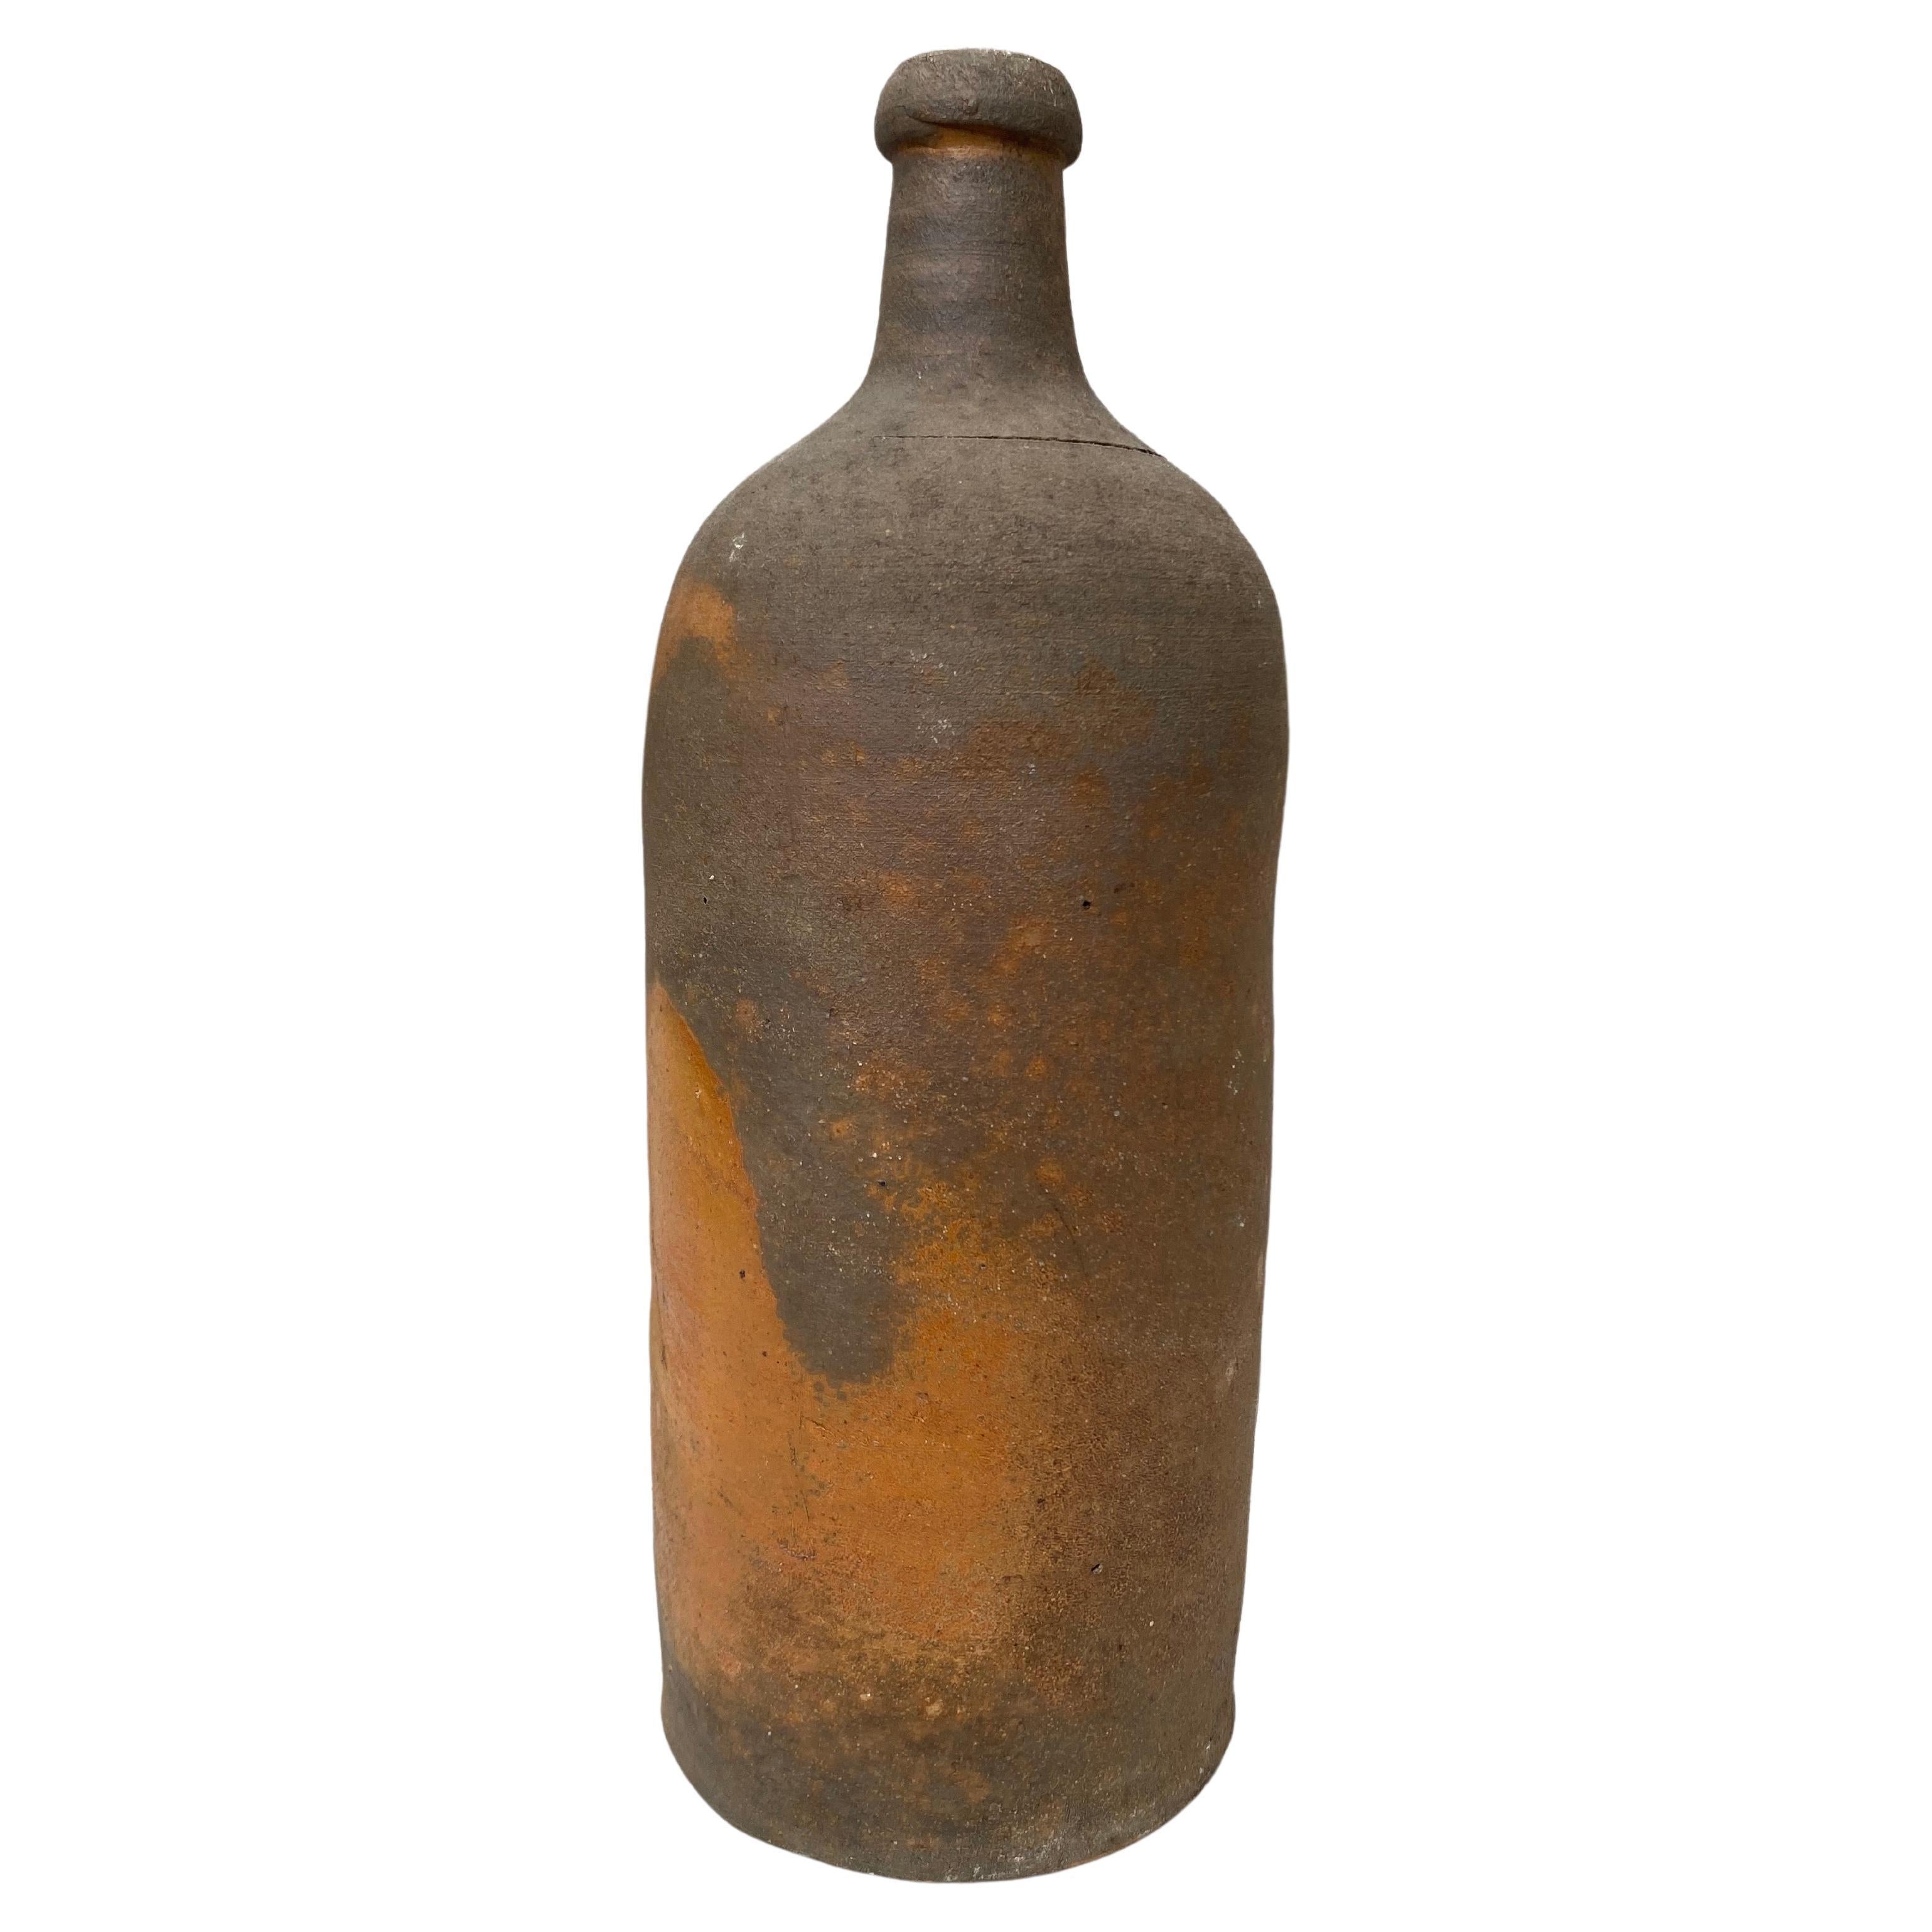 Französische Zigarettenflasche aus Keramik aus der Normandie, 19. Jahrhundert